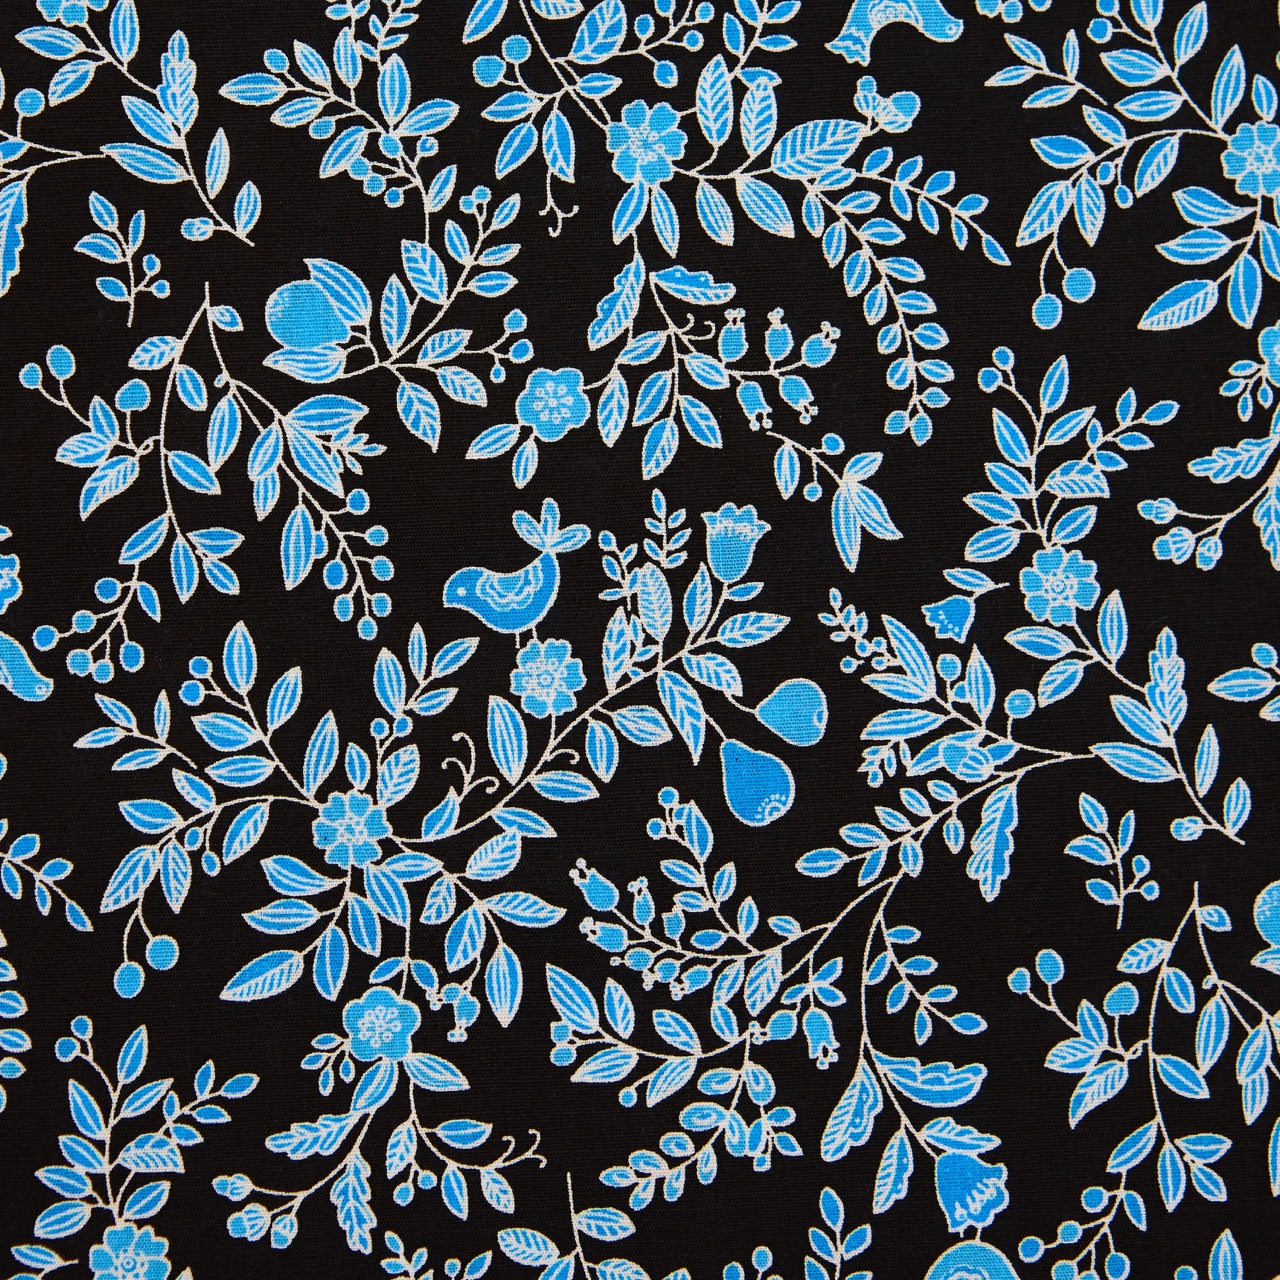 Cotton Floral - Blue Ivy (detail)